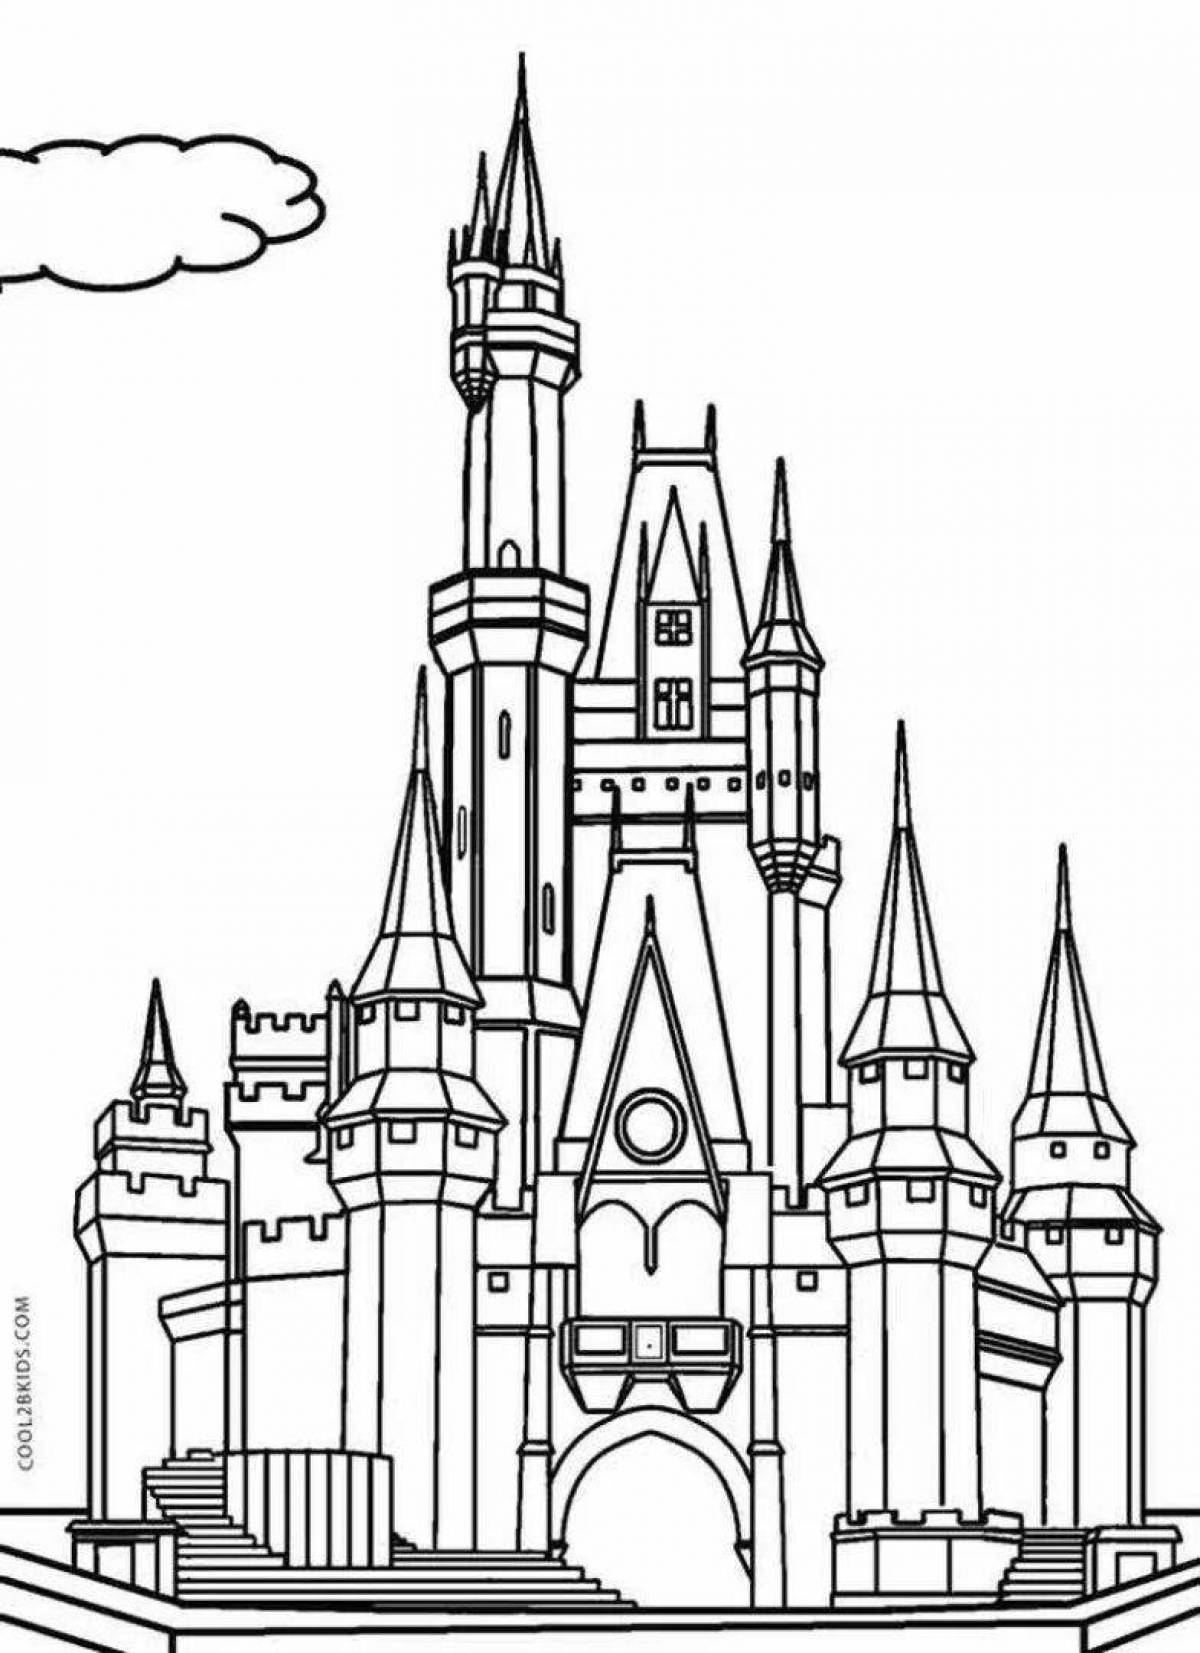 Fairytale castles #2